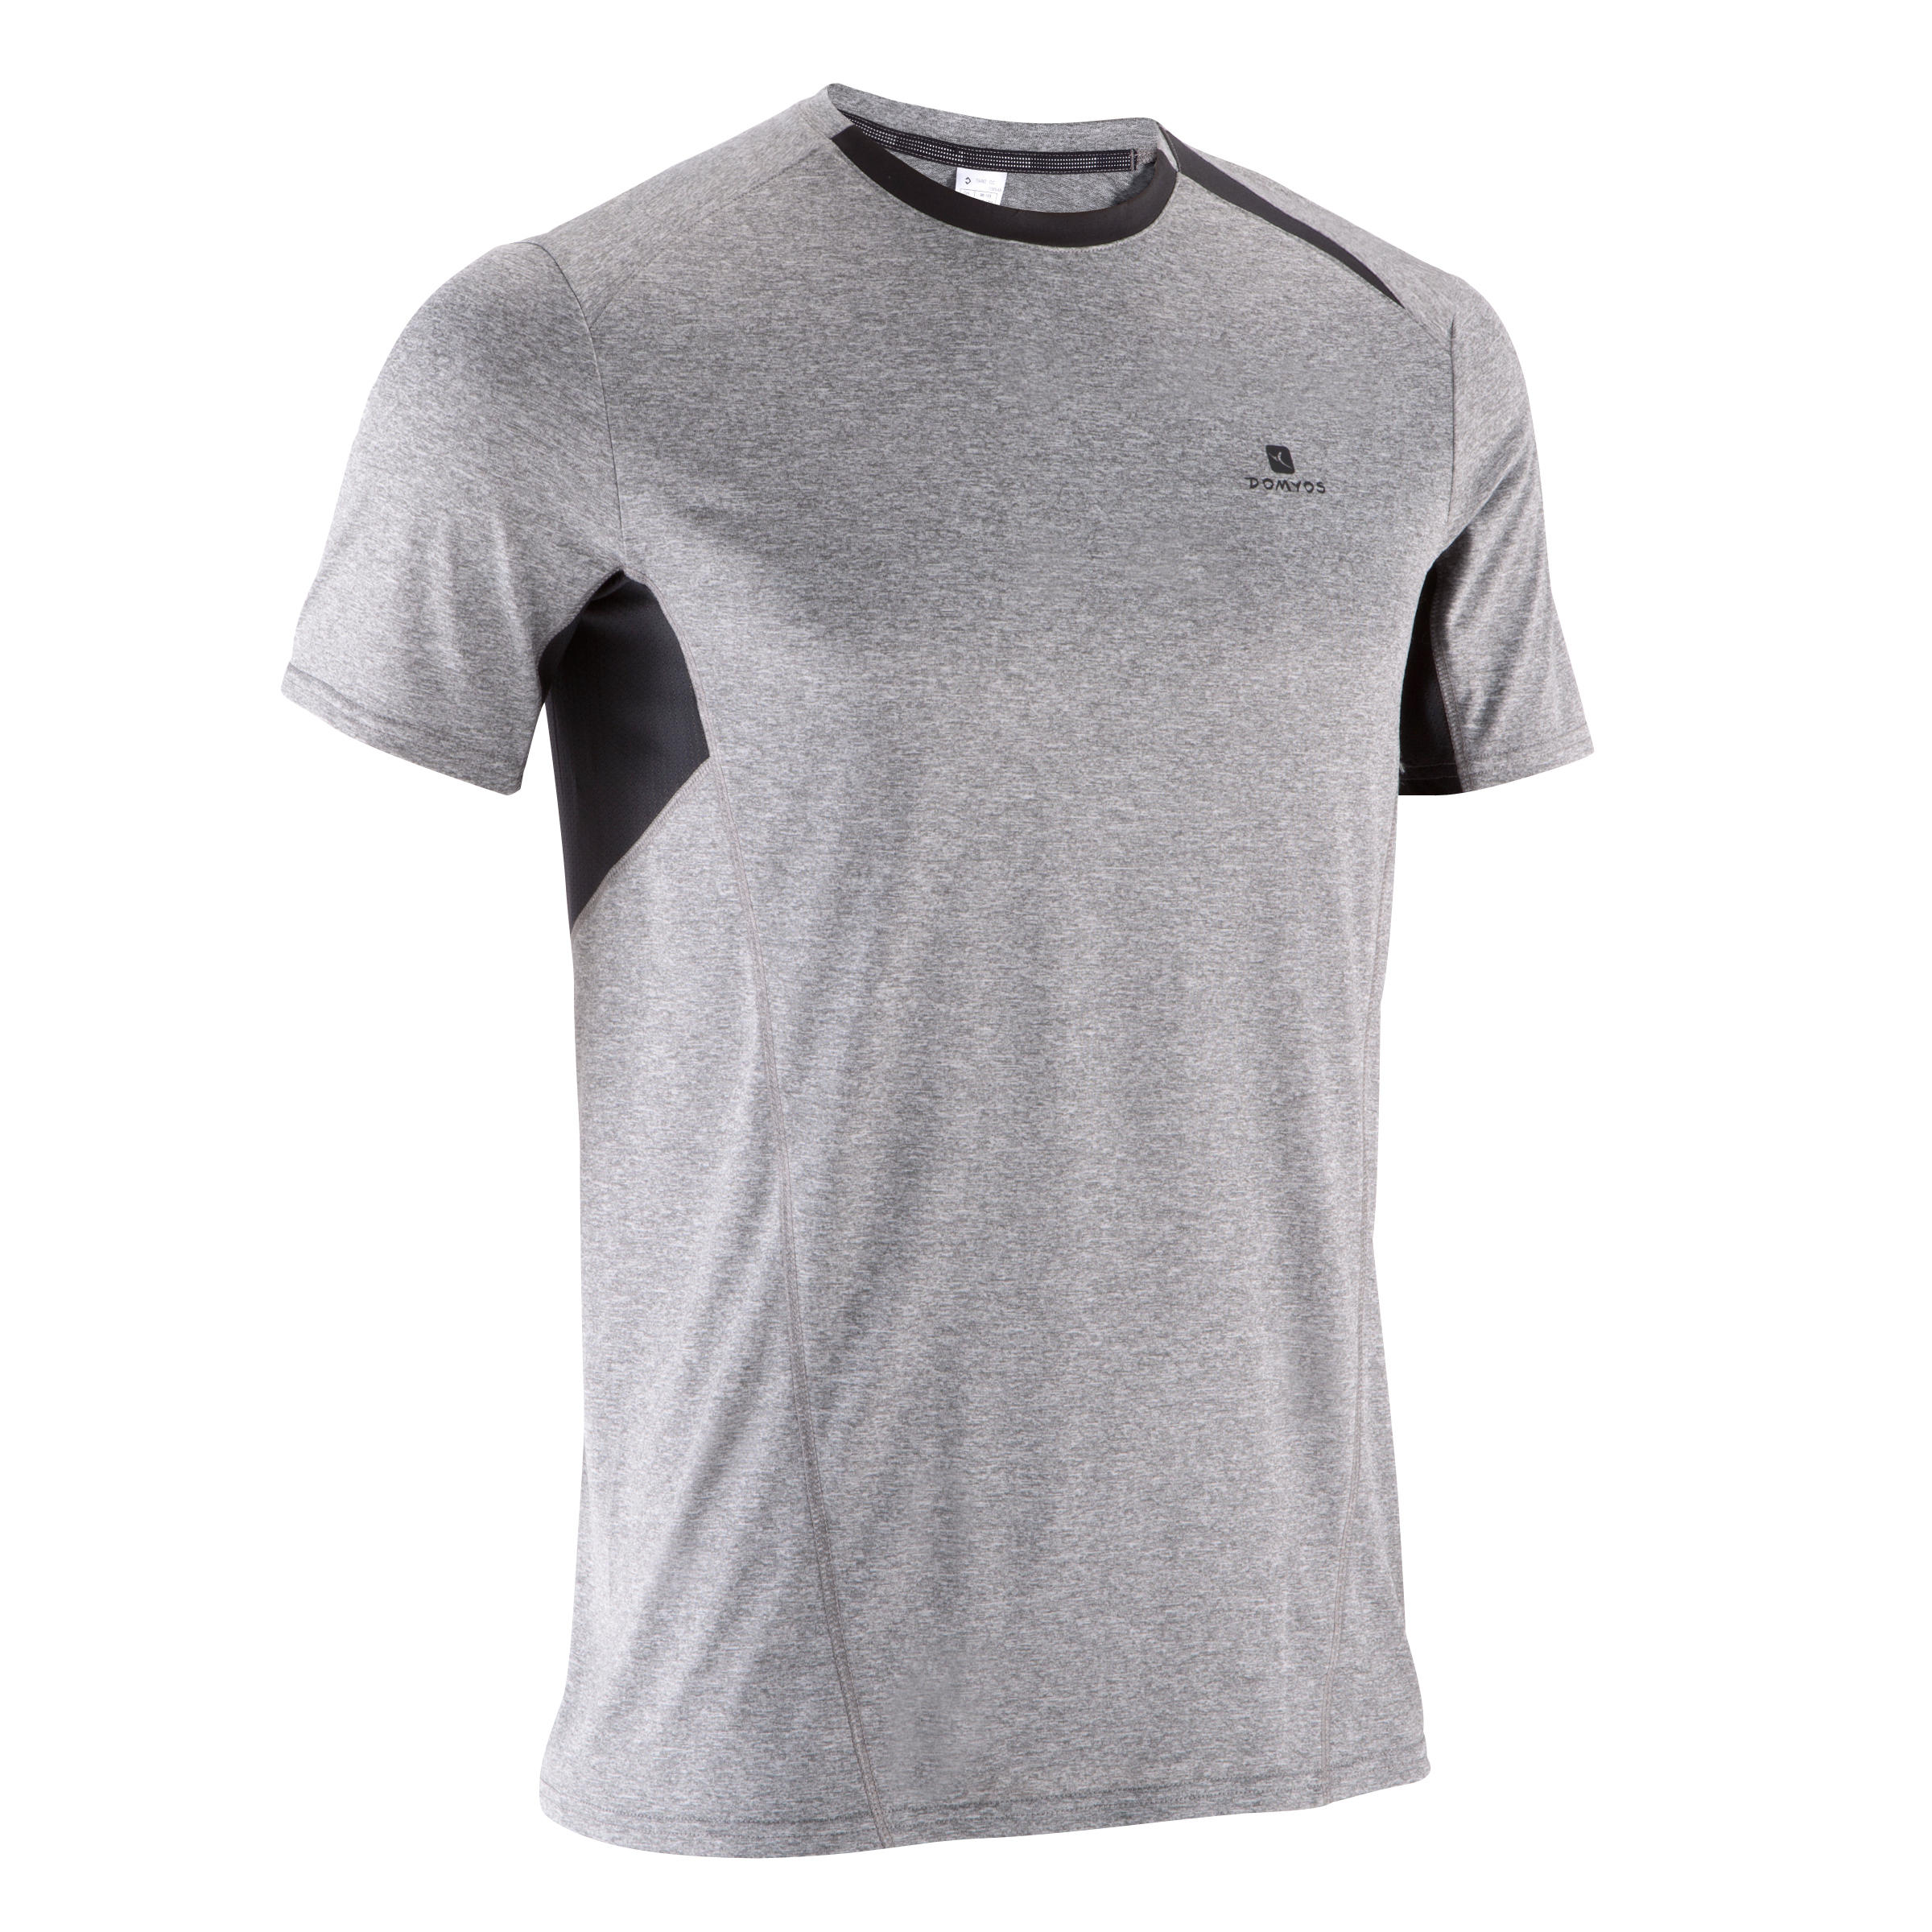 DOMYOS Breathe Light Fitness Print T-shirt - Light Mottled Grey